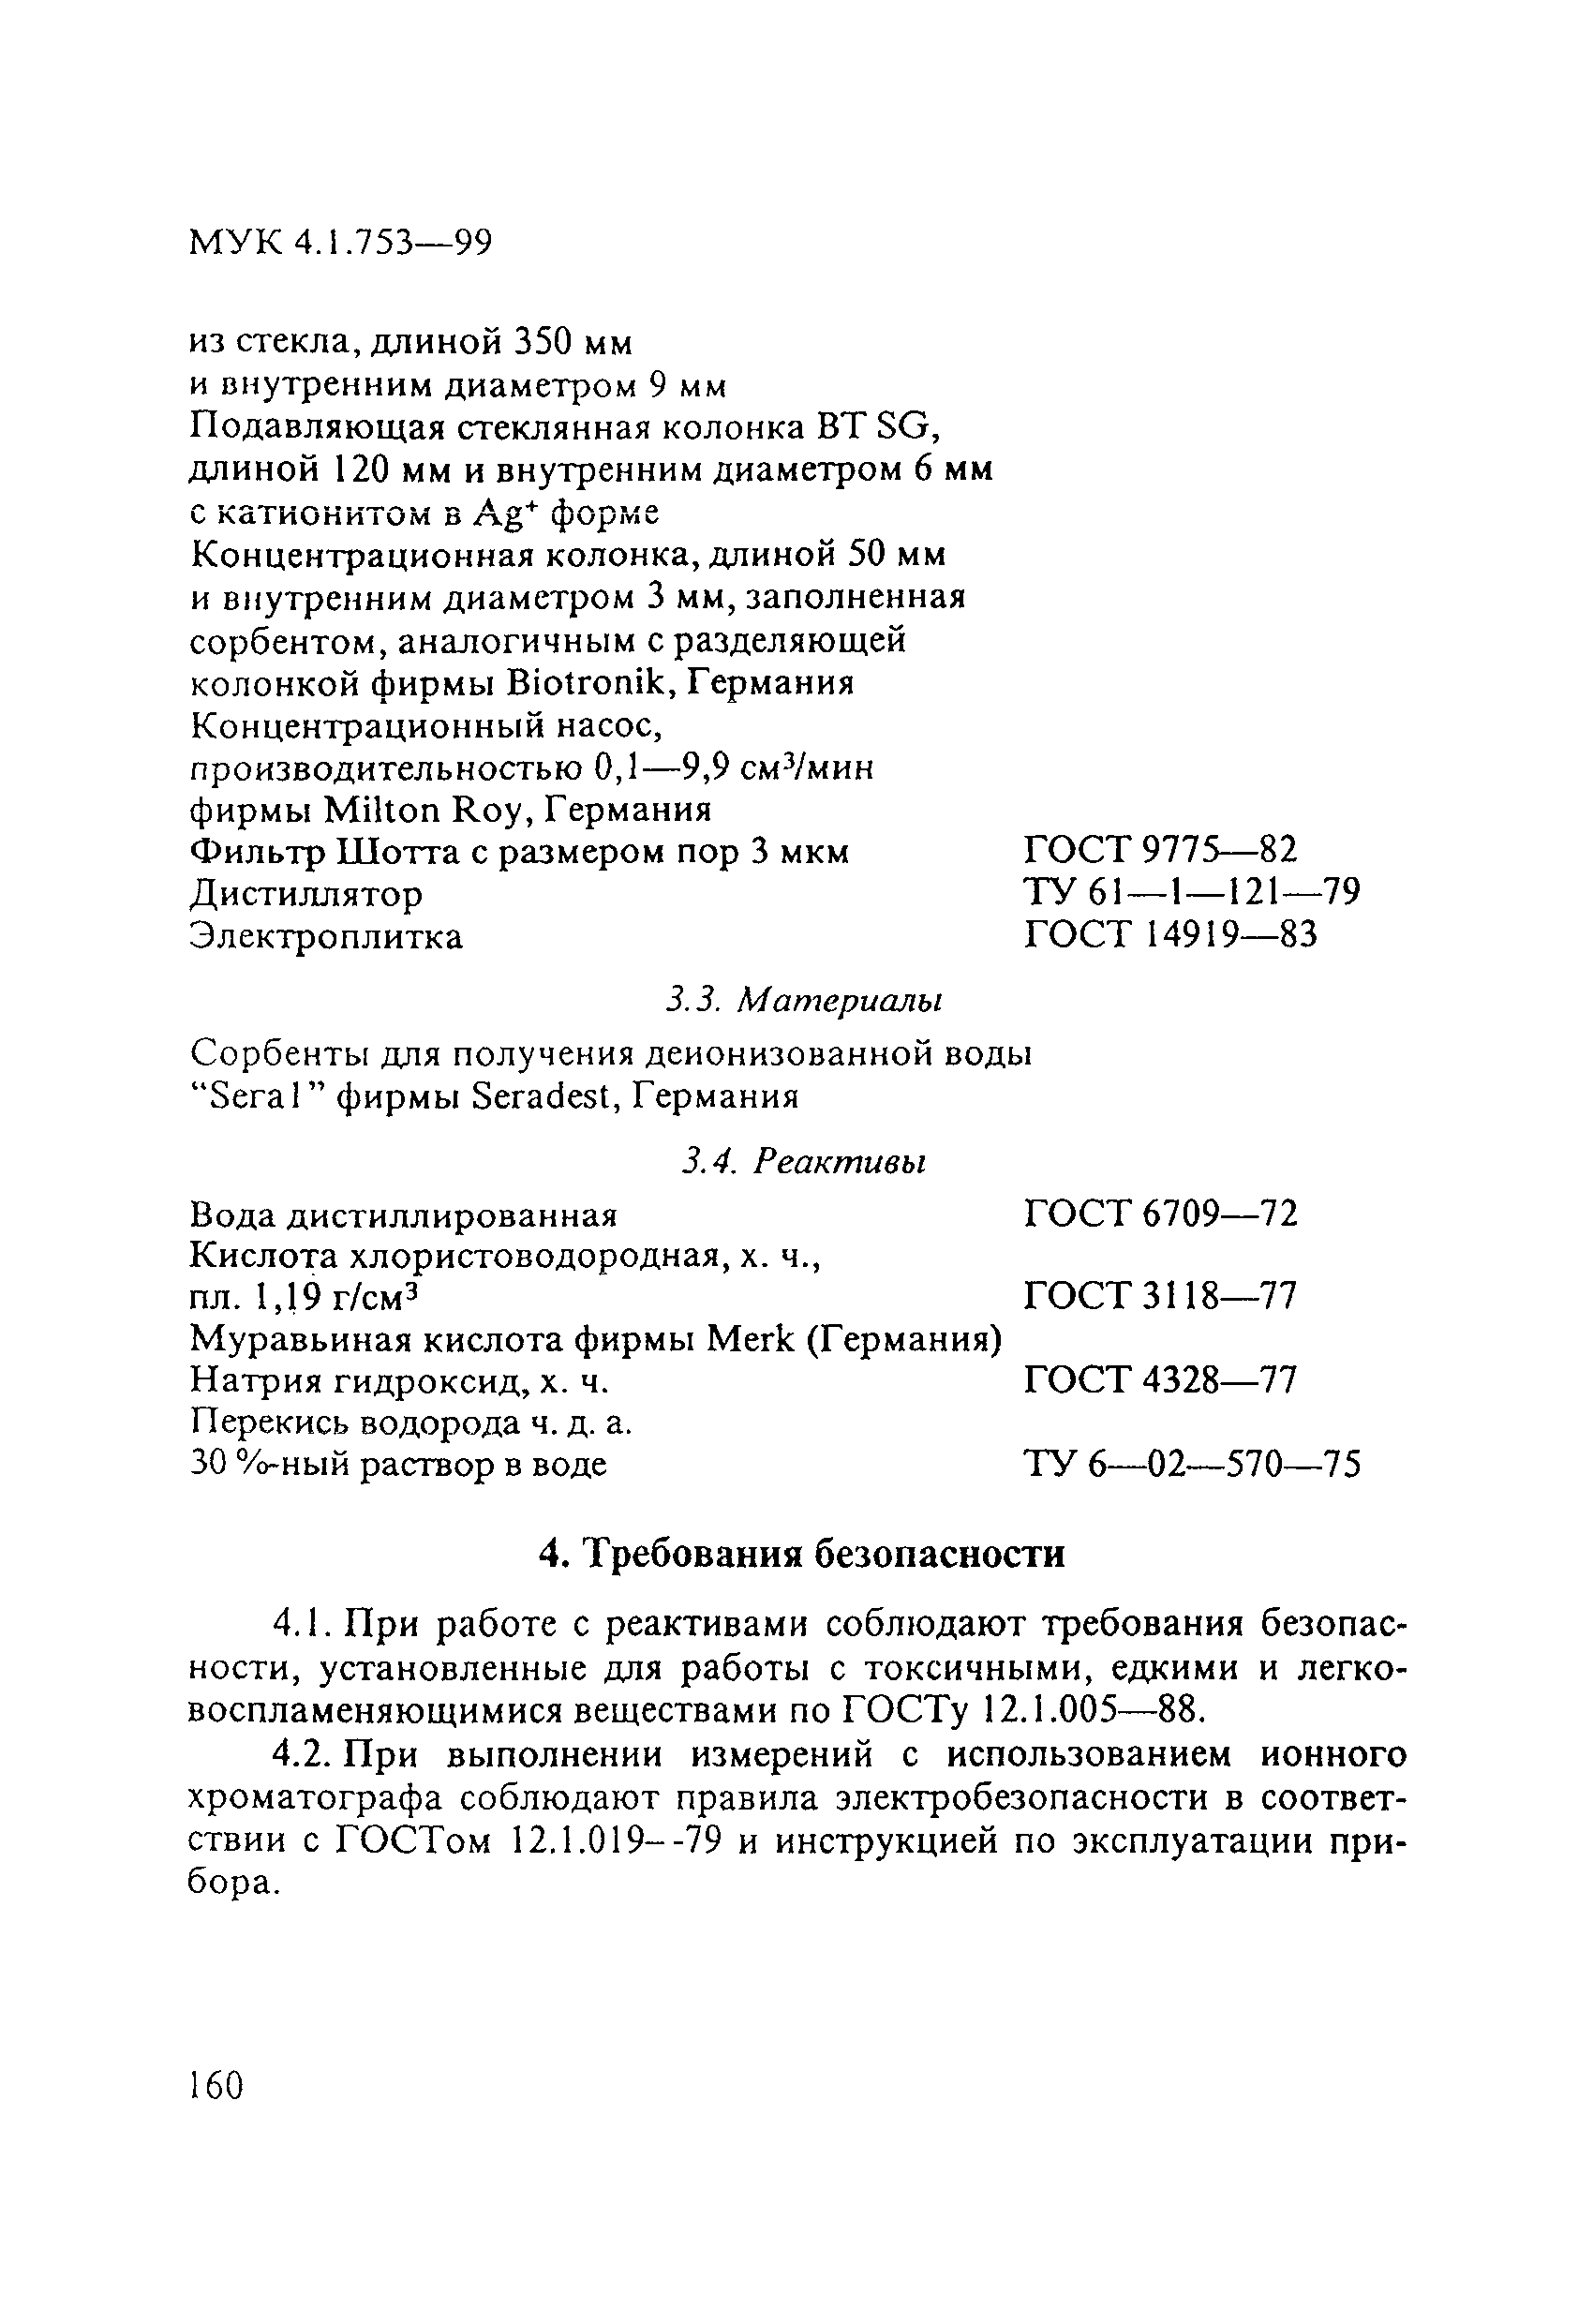 МУК 4.1.753-99